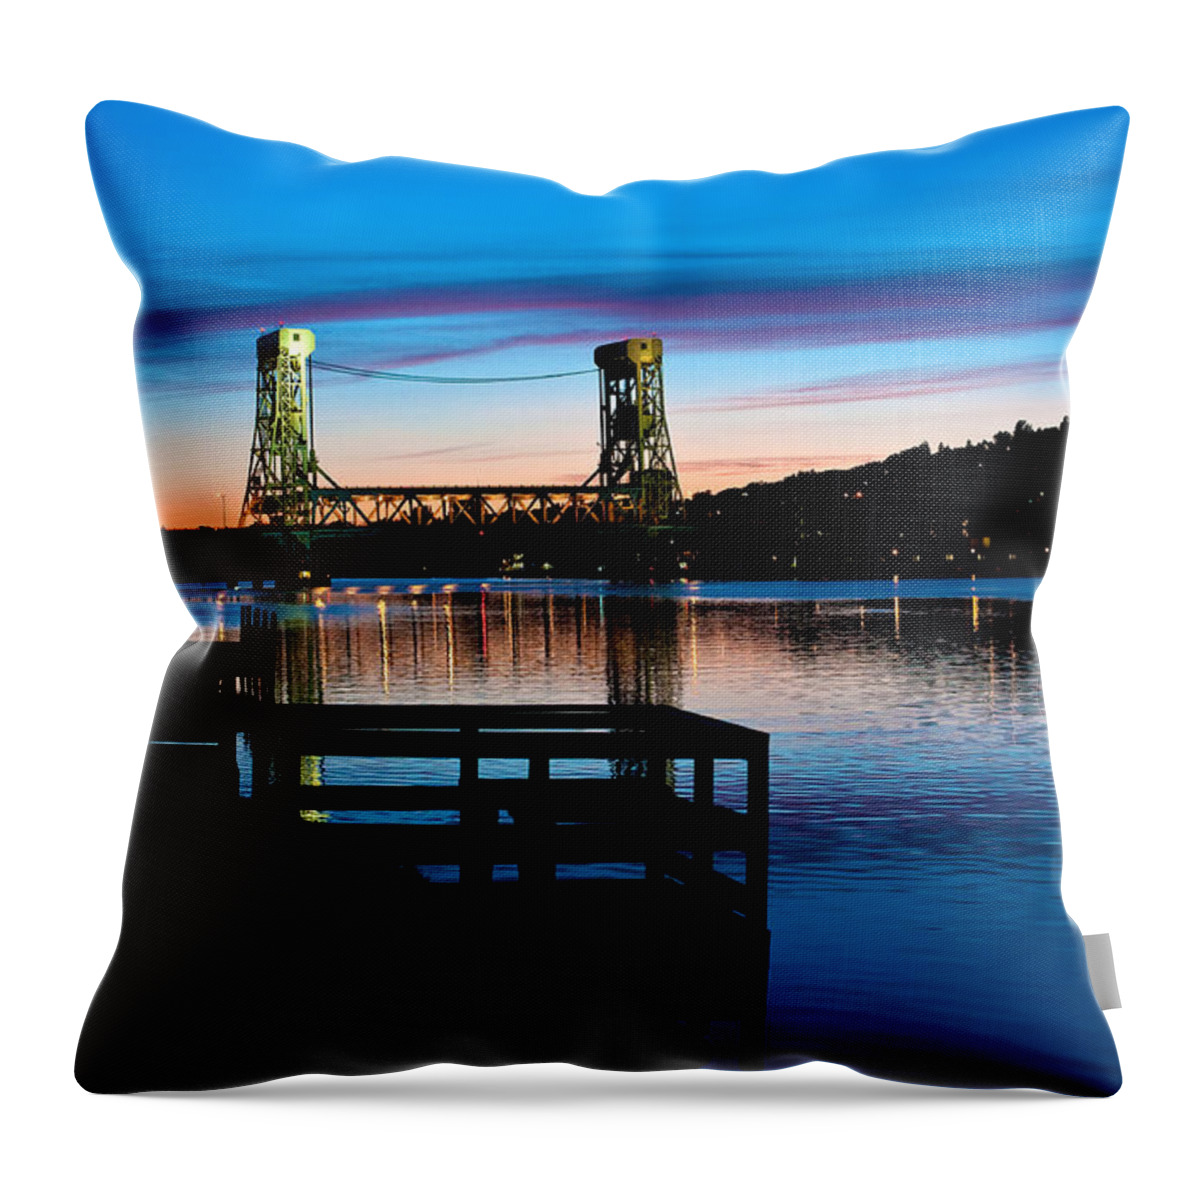 Upper Peninsula Throw Pillow featuring the photograph Houghton Bridge Sunset by Steven Dunn